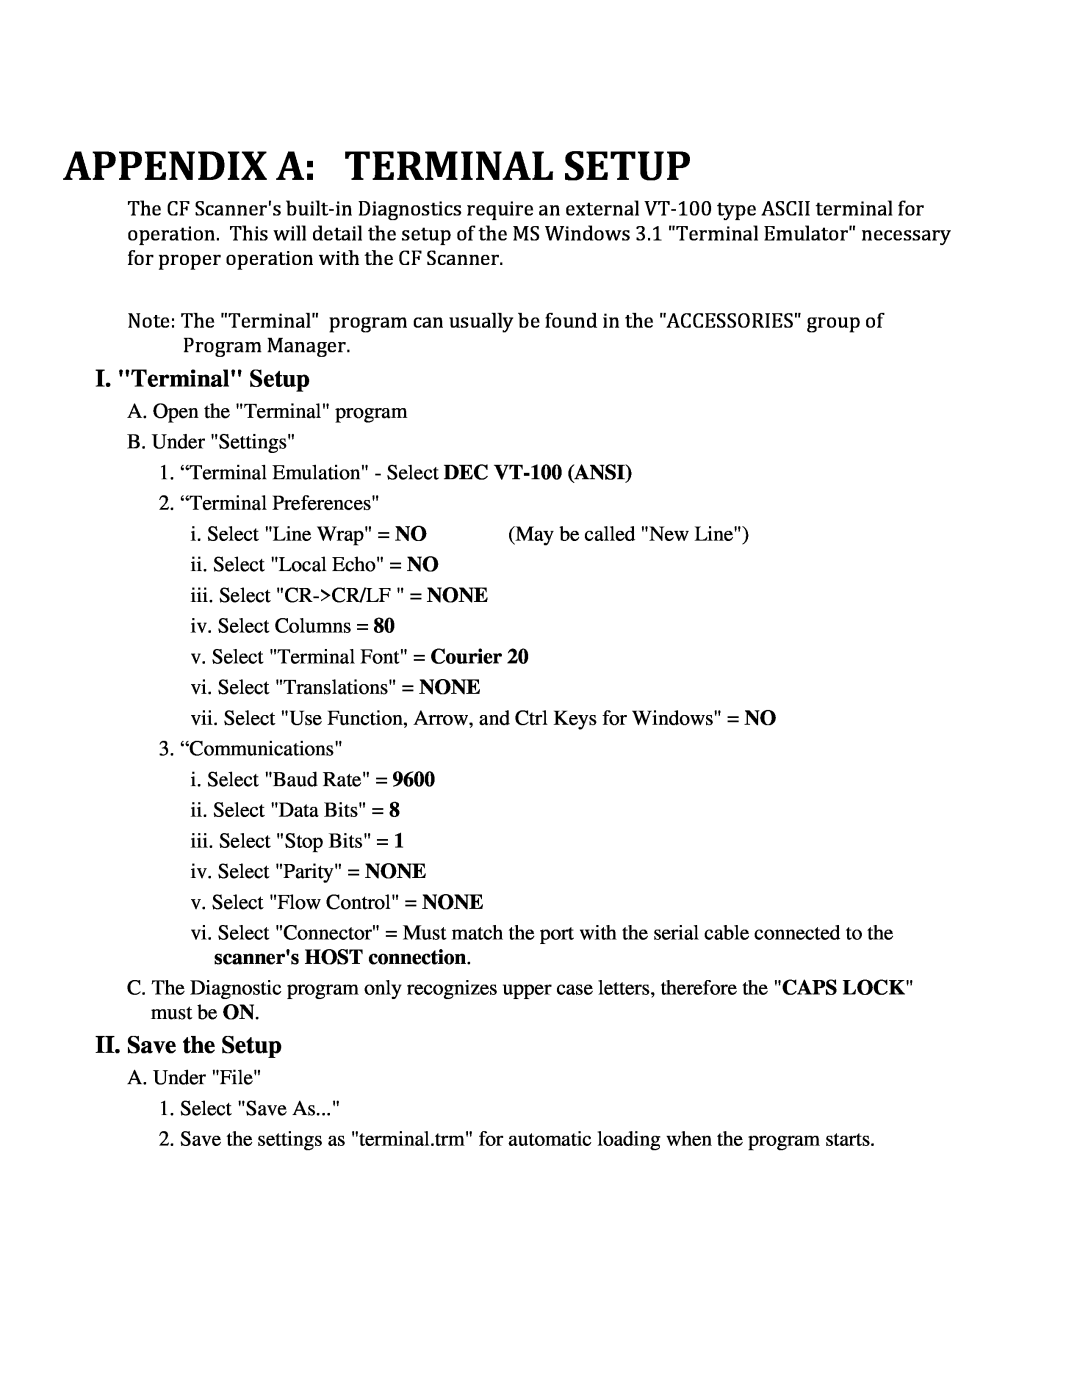 IBM CF Series manual I. Terminal Setup, II. Save the Setup,    